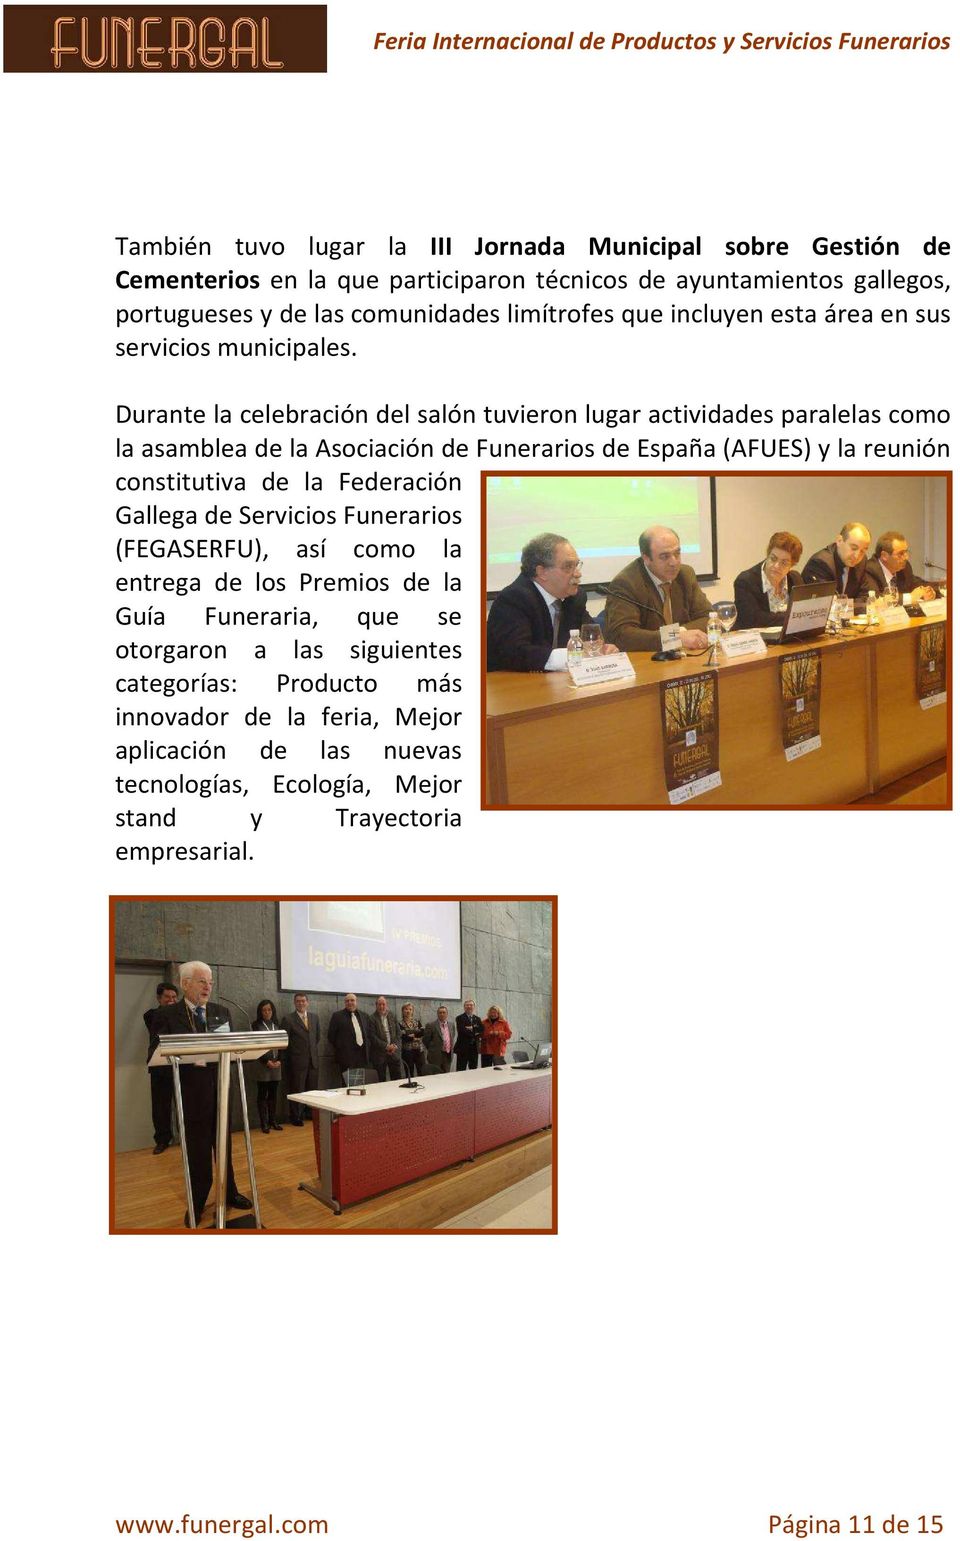 Durante la celebración del salón tuvieron lugar actividades paralelas como la asamblea de la Asociación de Funerarios de España (AFUES) y la reunión constitutiva de la Federación